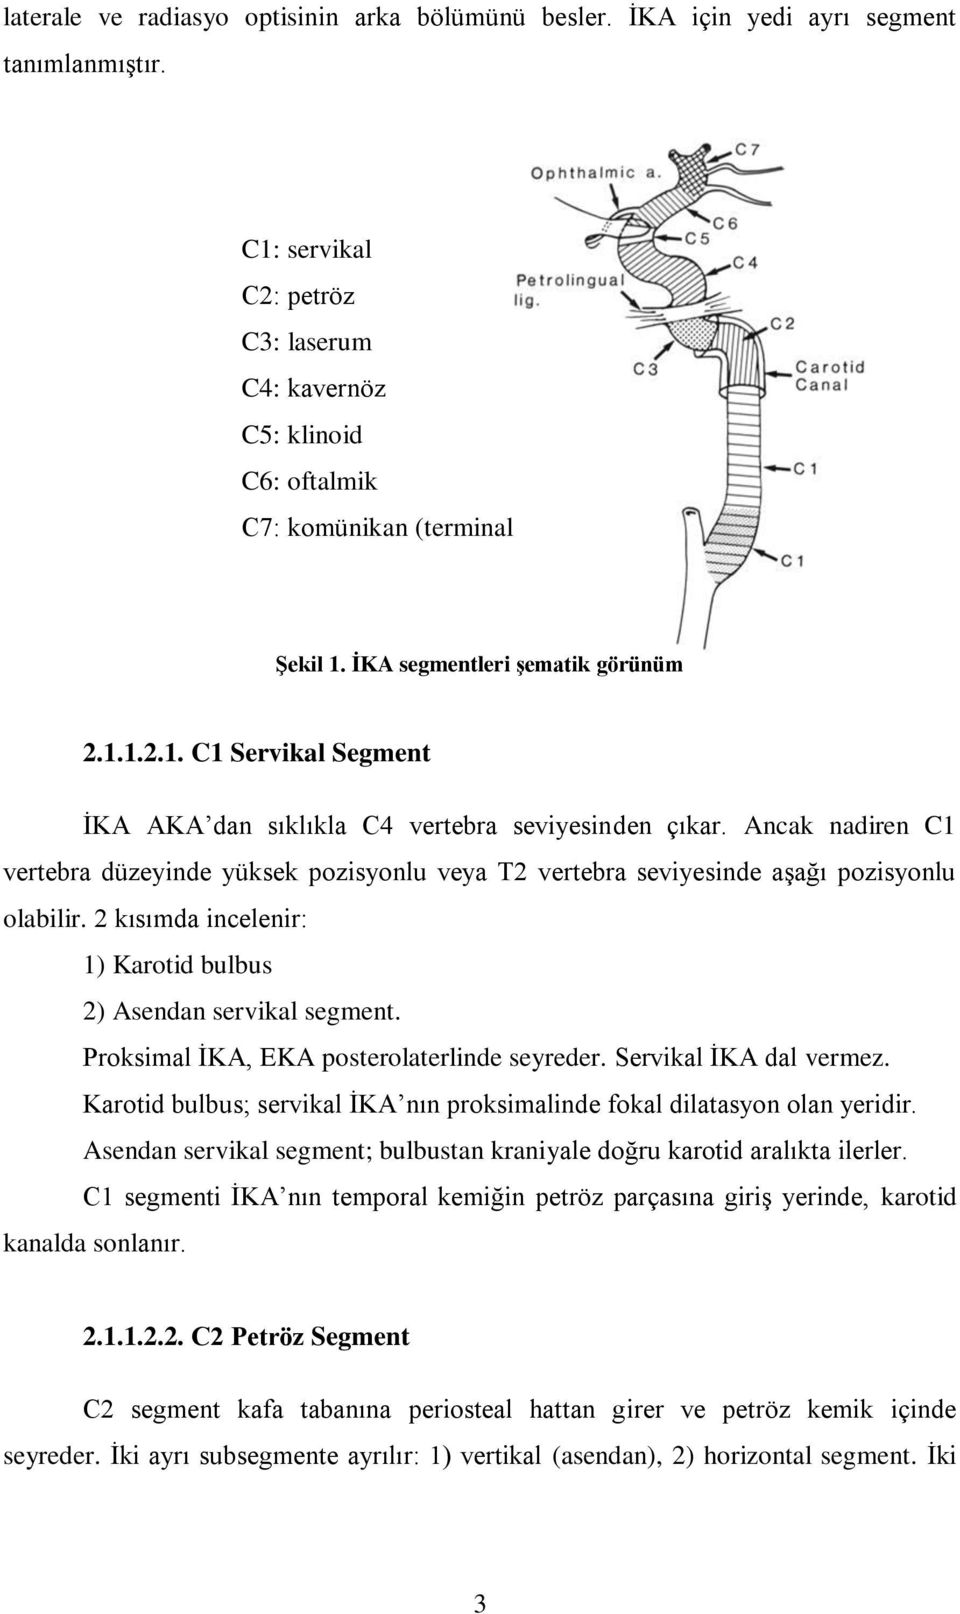 Ancak nadiren C1 vertebra düzeyinde yüksek pozisyonlu veya T2 vertebra seviyesinde aşağı pozisyonlu olabilir. 2 kısımda incelenir: 1) Karotid bulbus 2) Asendan servikal segment.